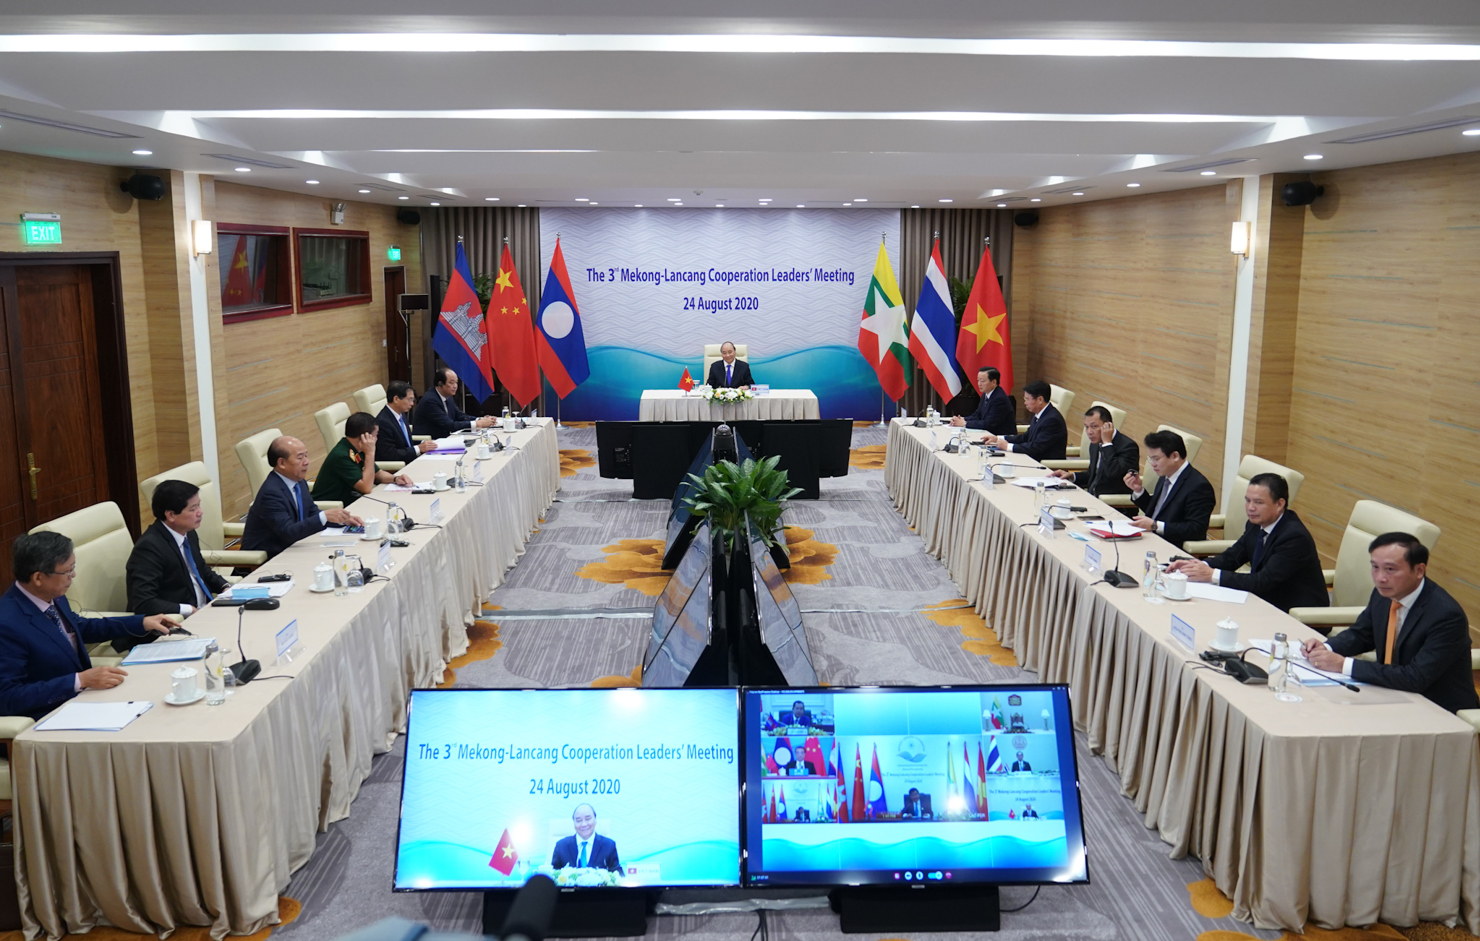 Hội nghị cấp cao Mekong - Lan Thương diễn ra theo hình thức trực tuyến. Nguồn: baochinhphu.vn